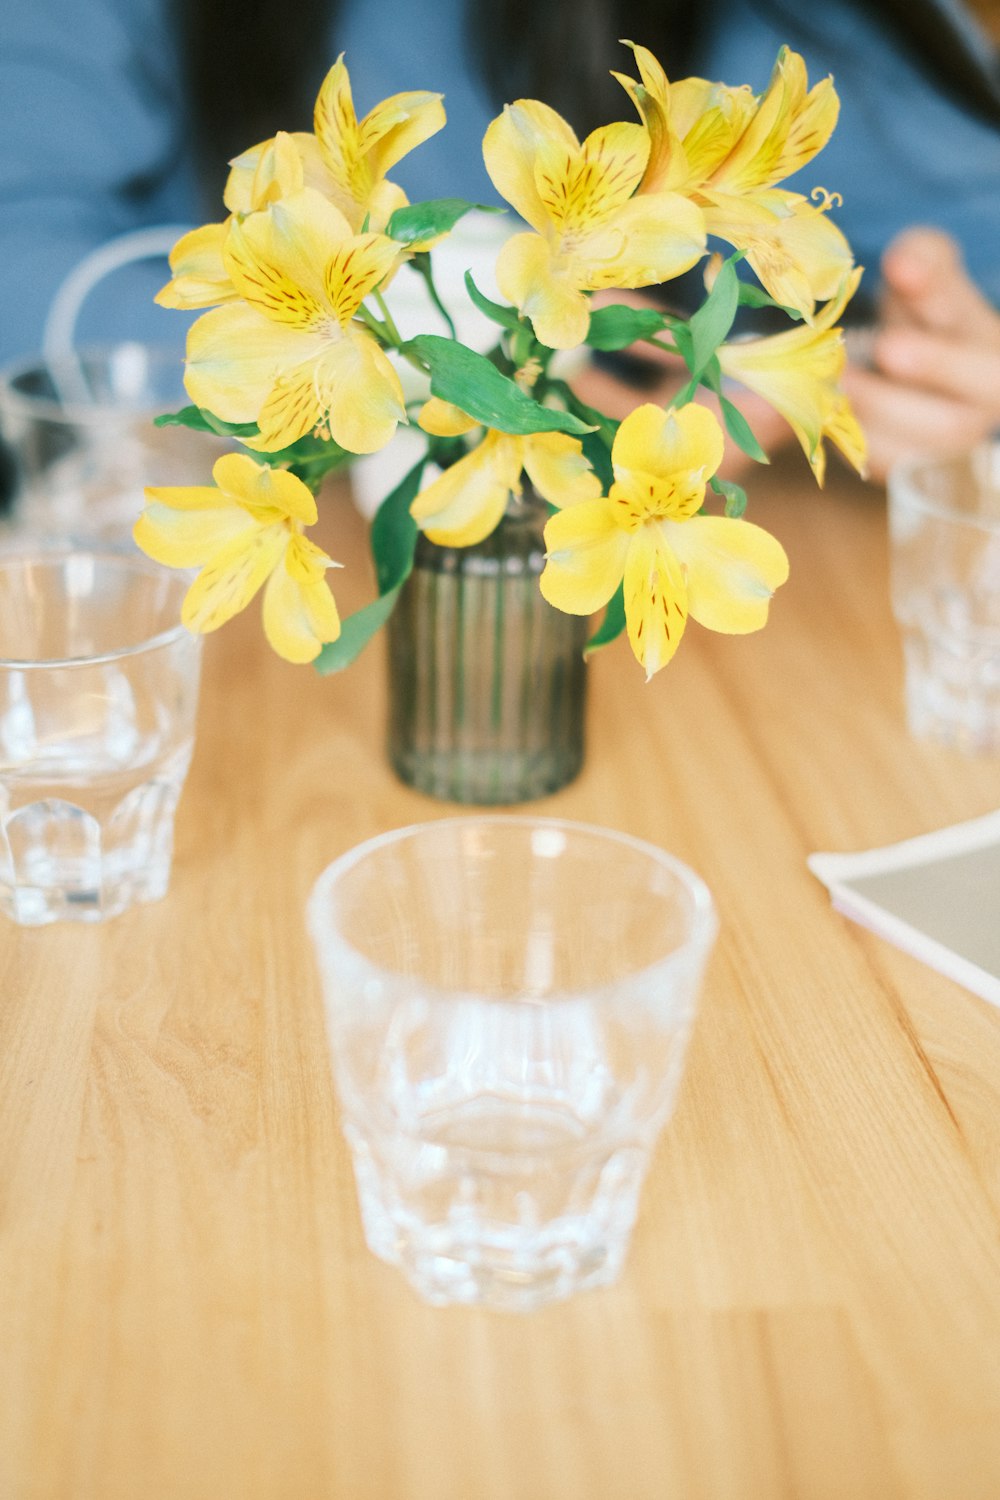 un vase avec des fleurs jaunes sur une table en bois